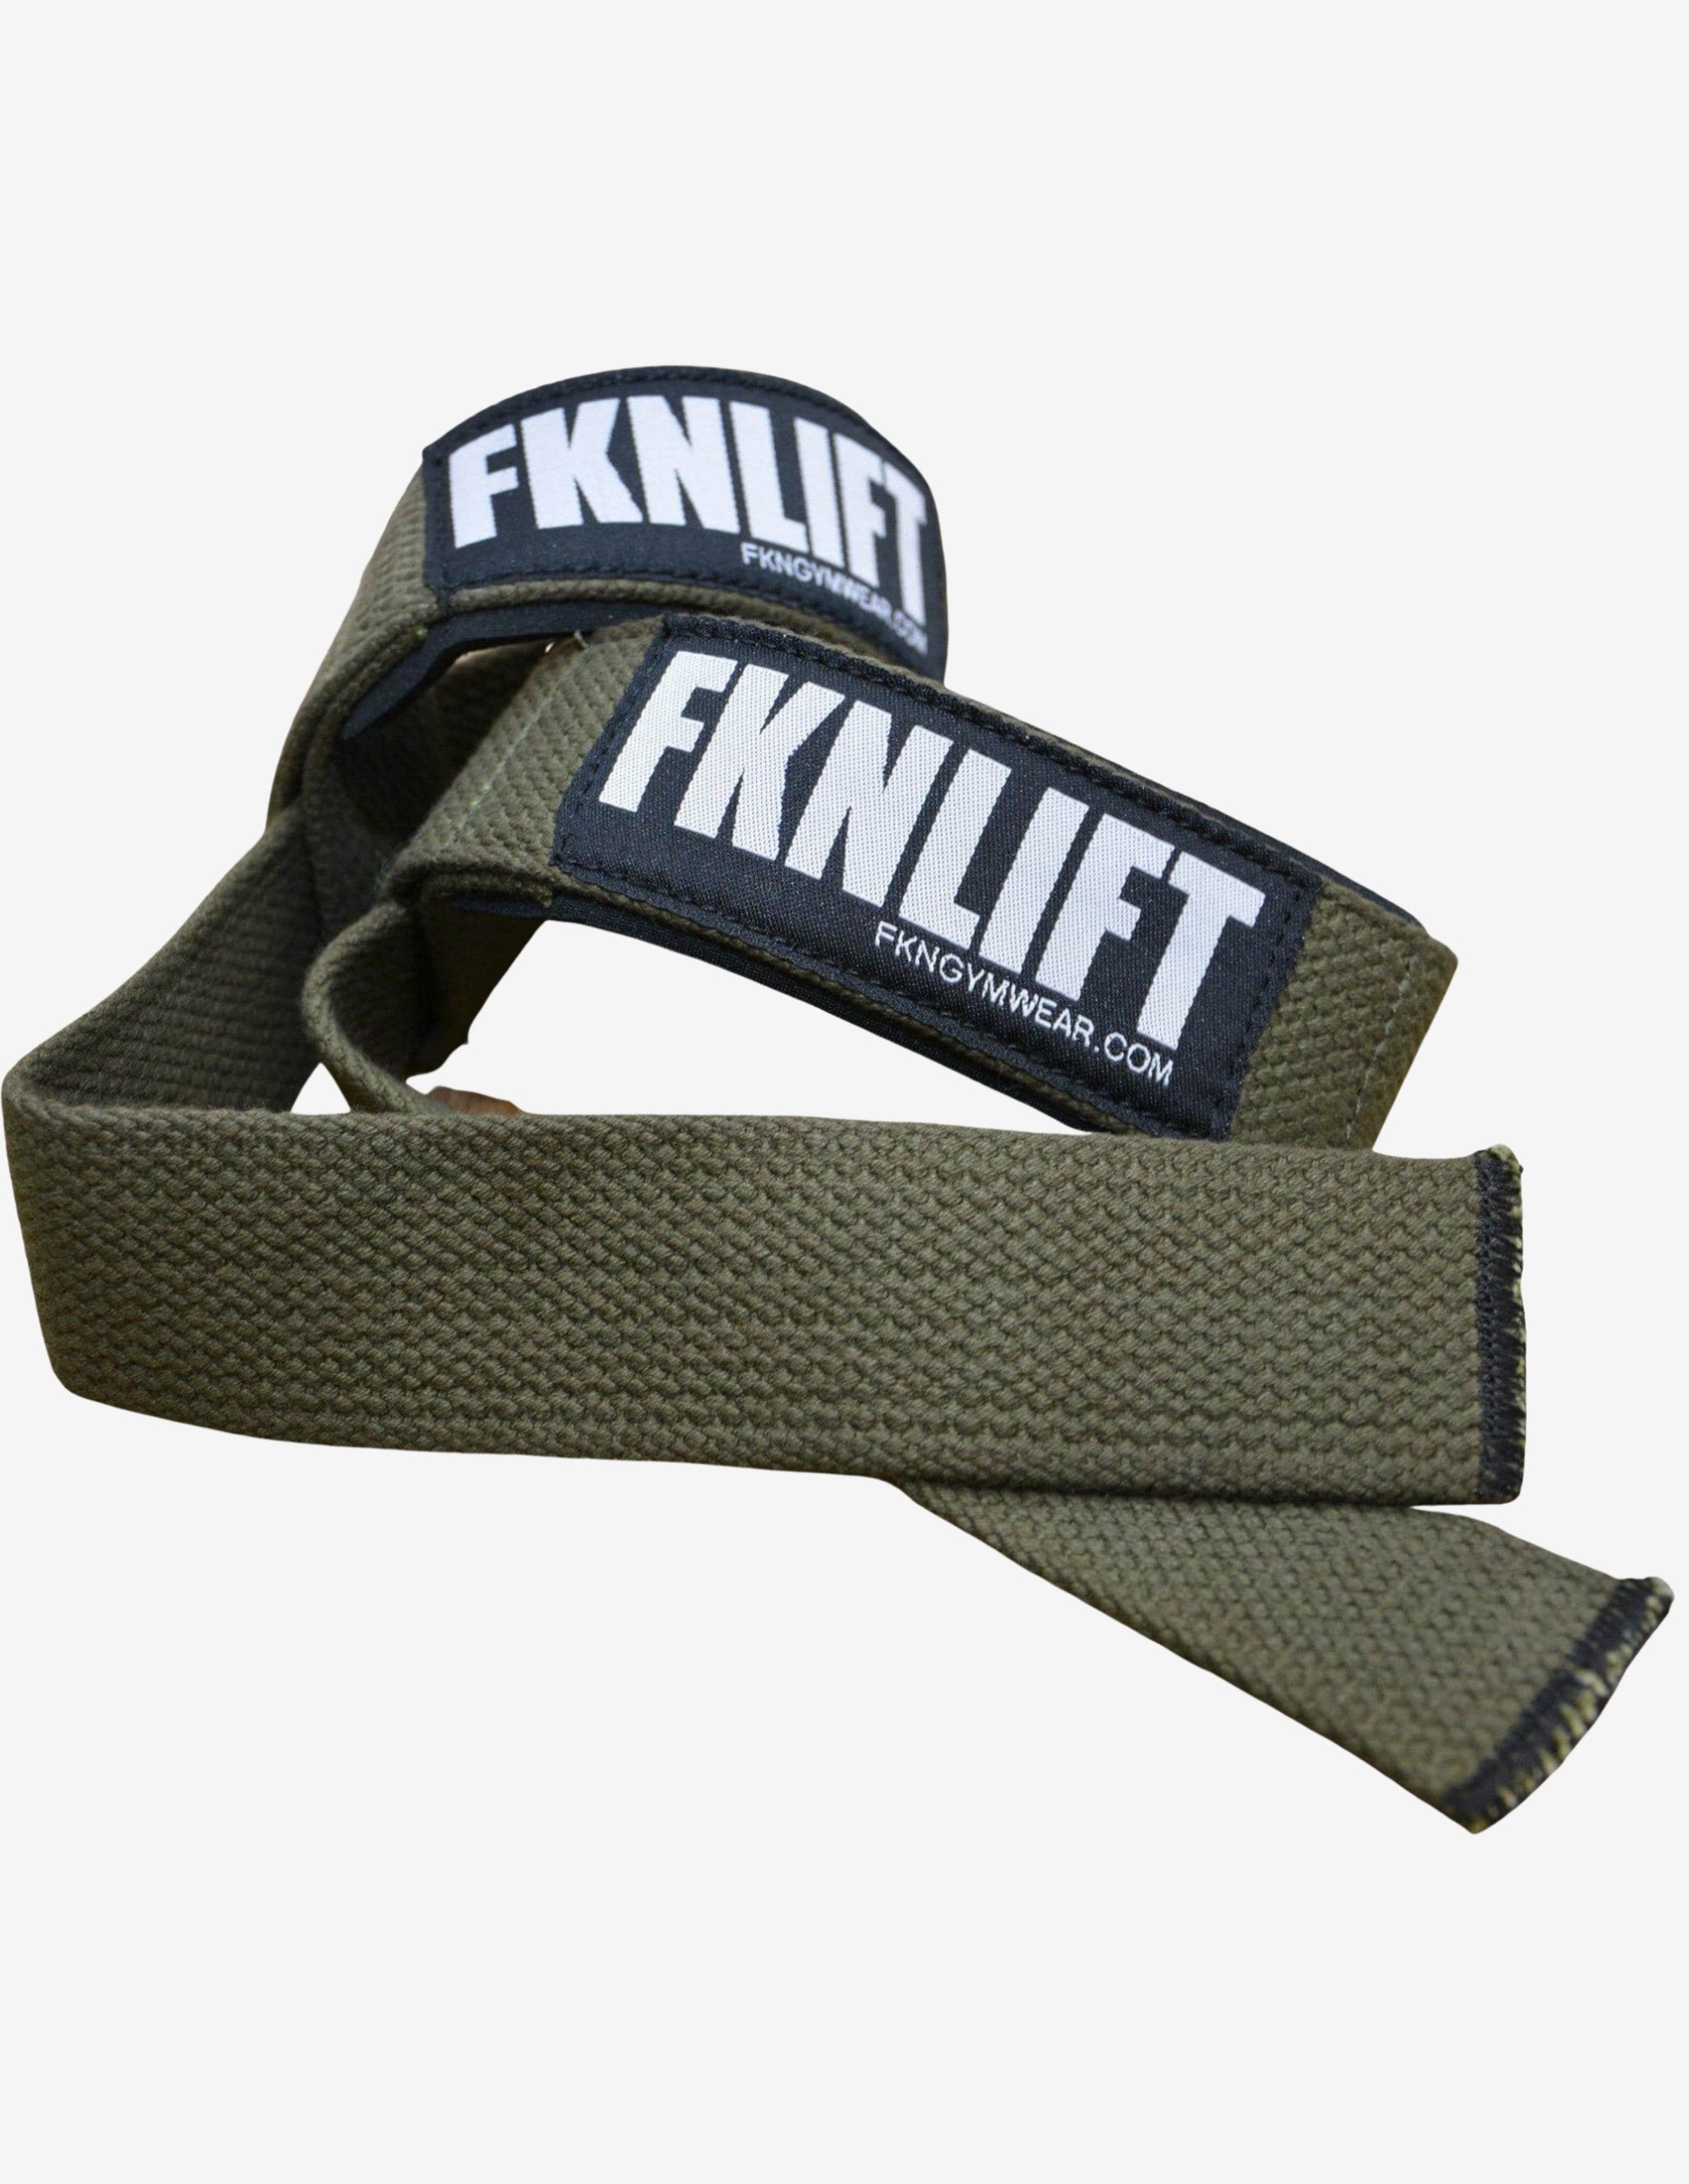 FKNLIFT Straps-Straps-FKN Gym Wear-Guru Muscle